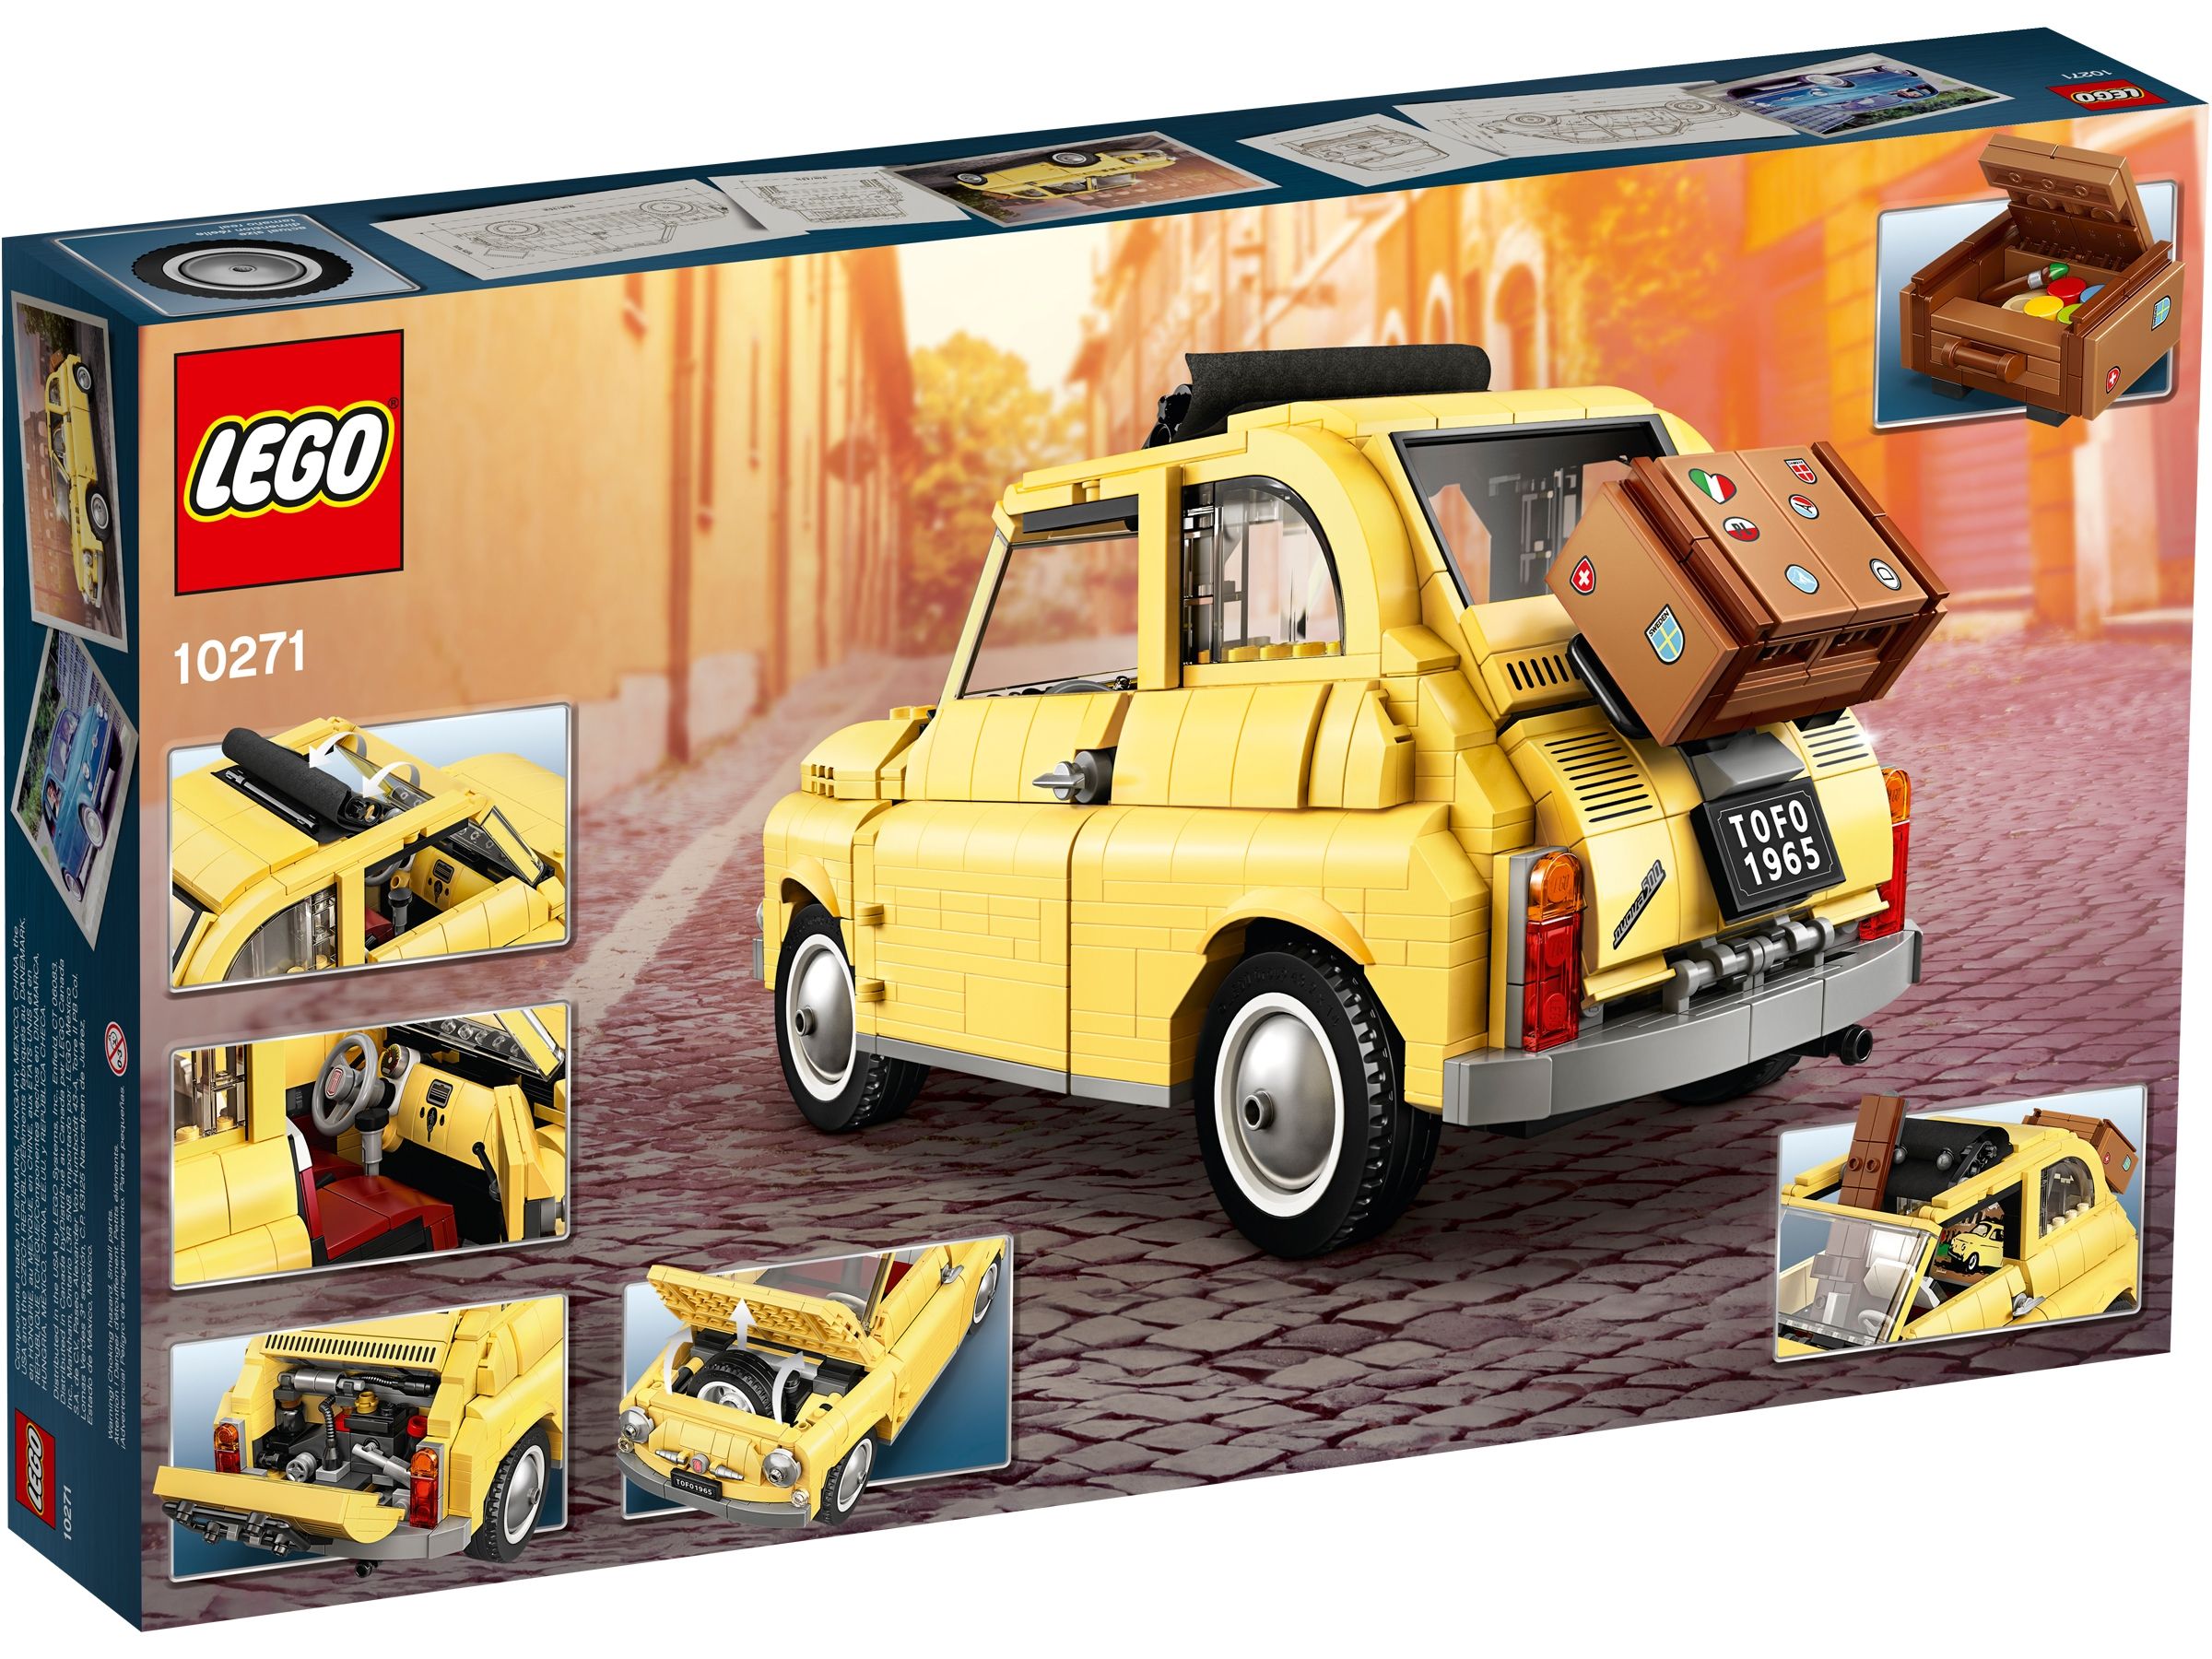 LEGO Advanced Models 10271 gelber Fiat 500 LEGO_10271_Box5_v39_2400.jpg